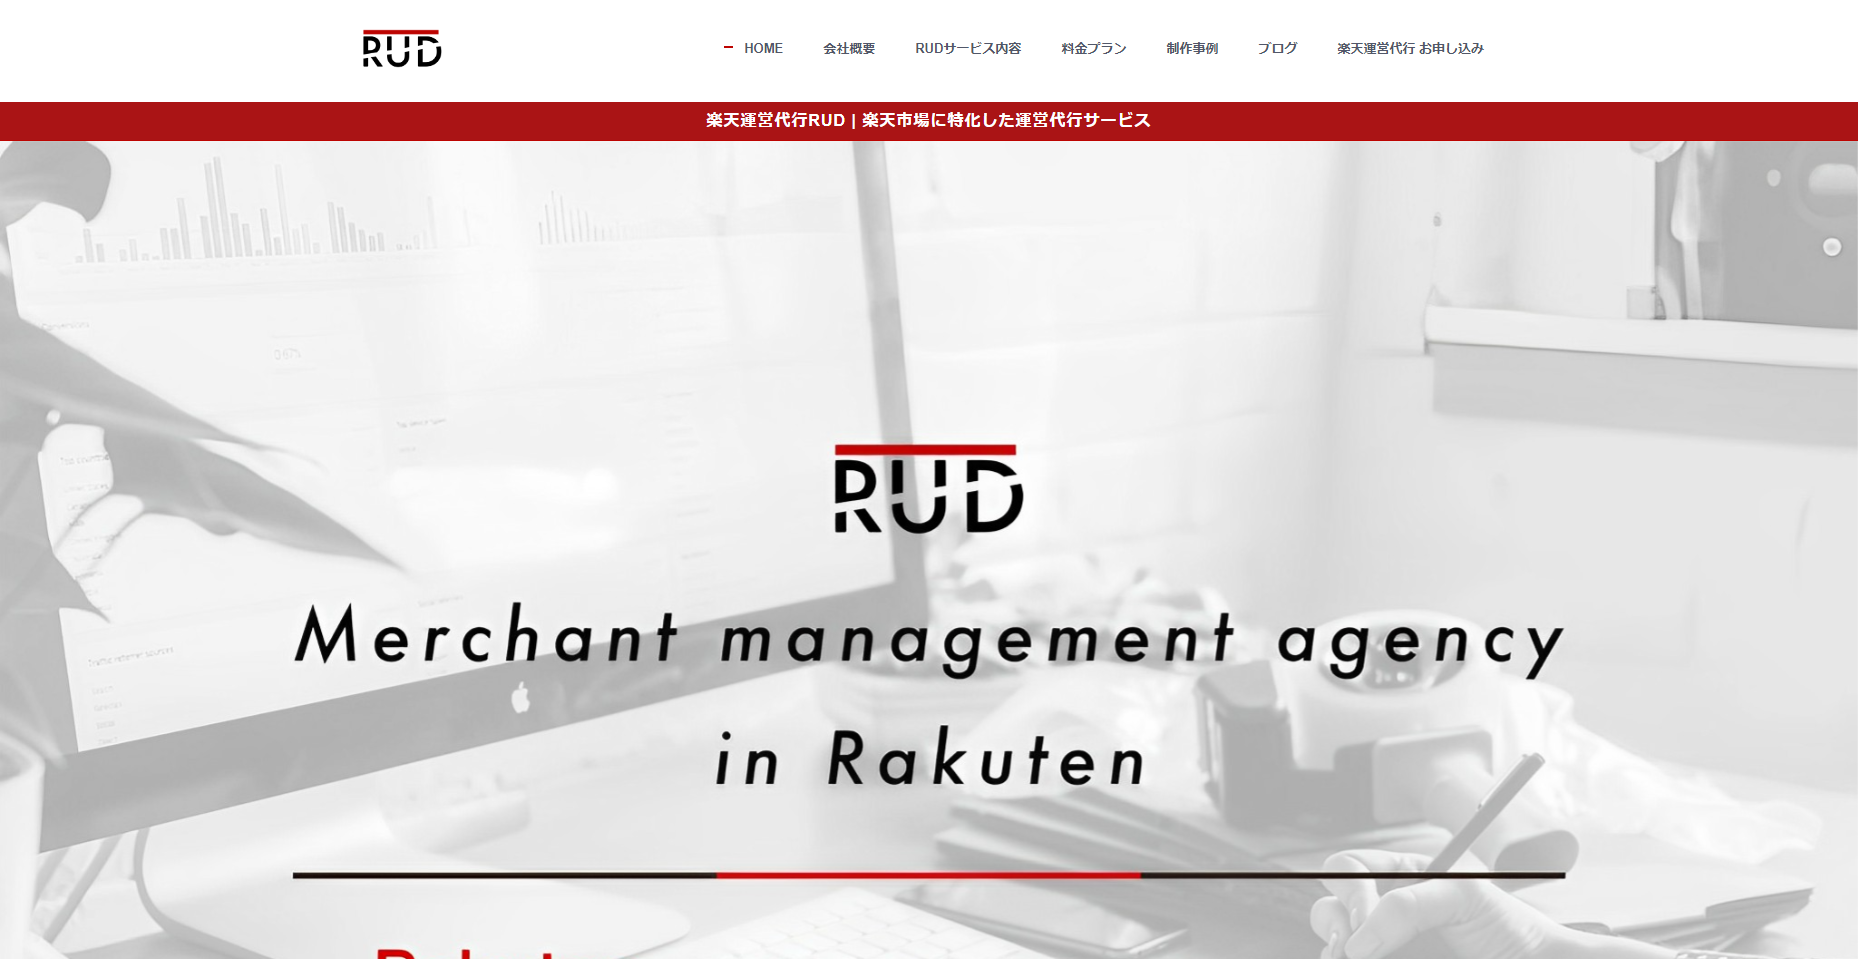 ECコンサルティング株式会社 RUD運営会社